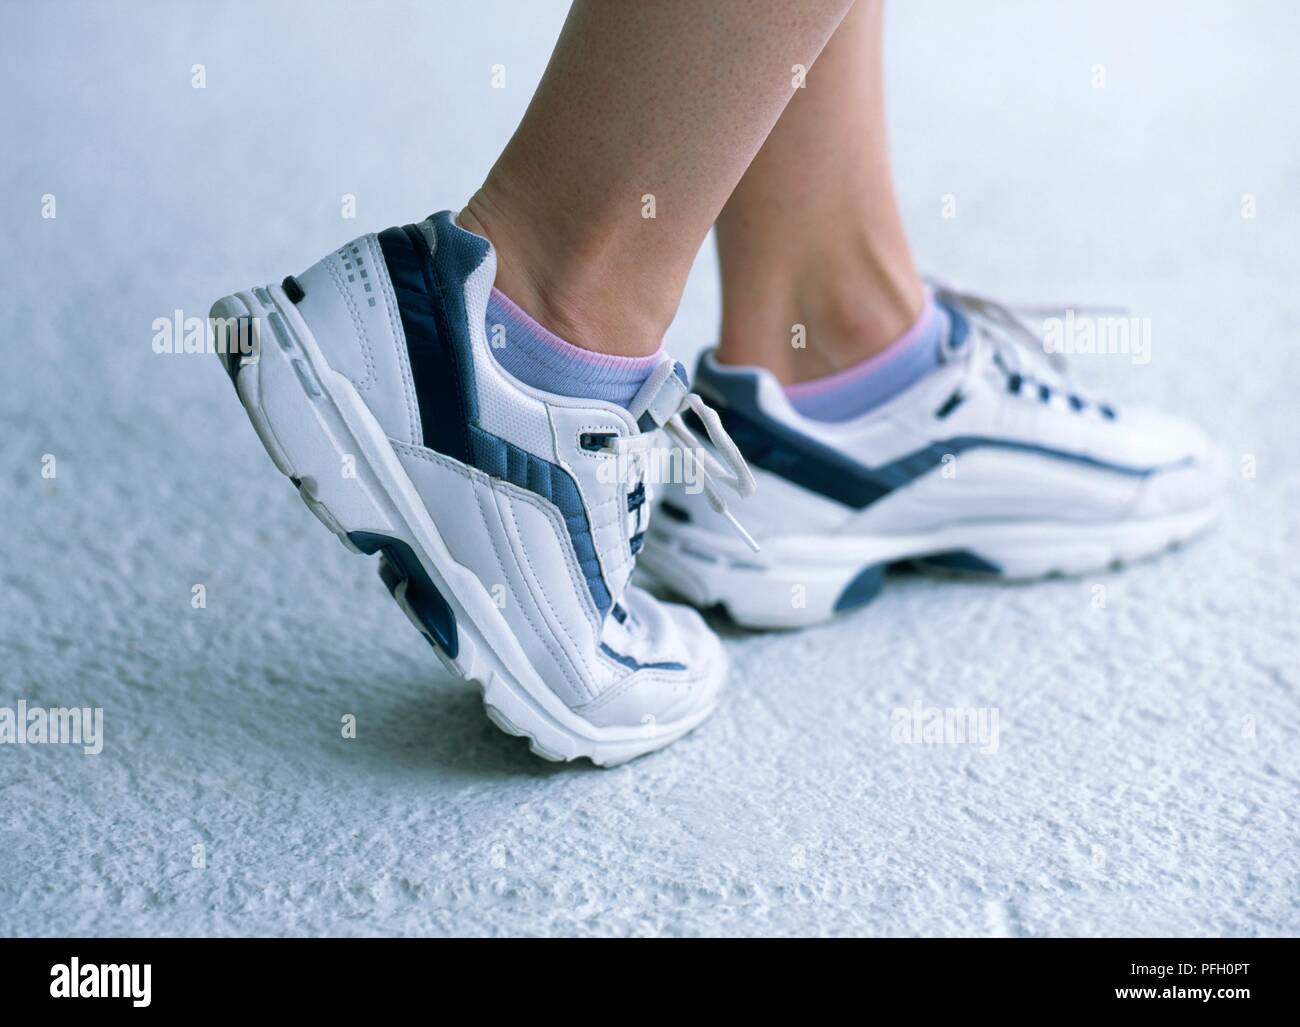 Die Füße der Frau im Sport Schuhe, stehend auf Kugel der Fuß mit dem rechten Fuß, close-up Stockfoto